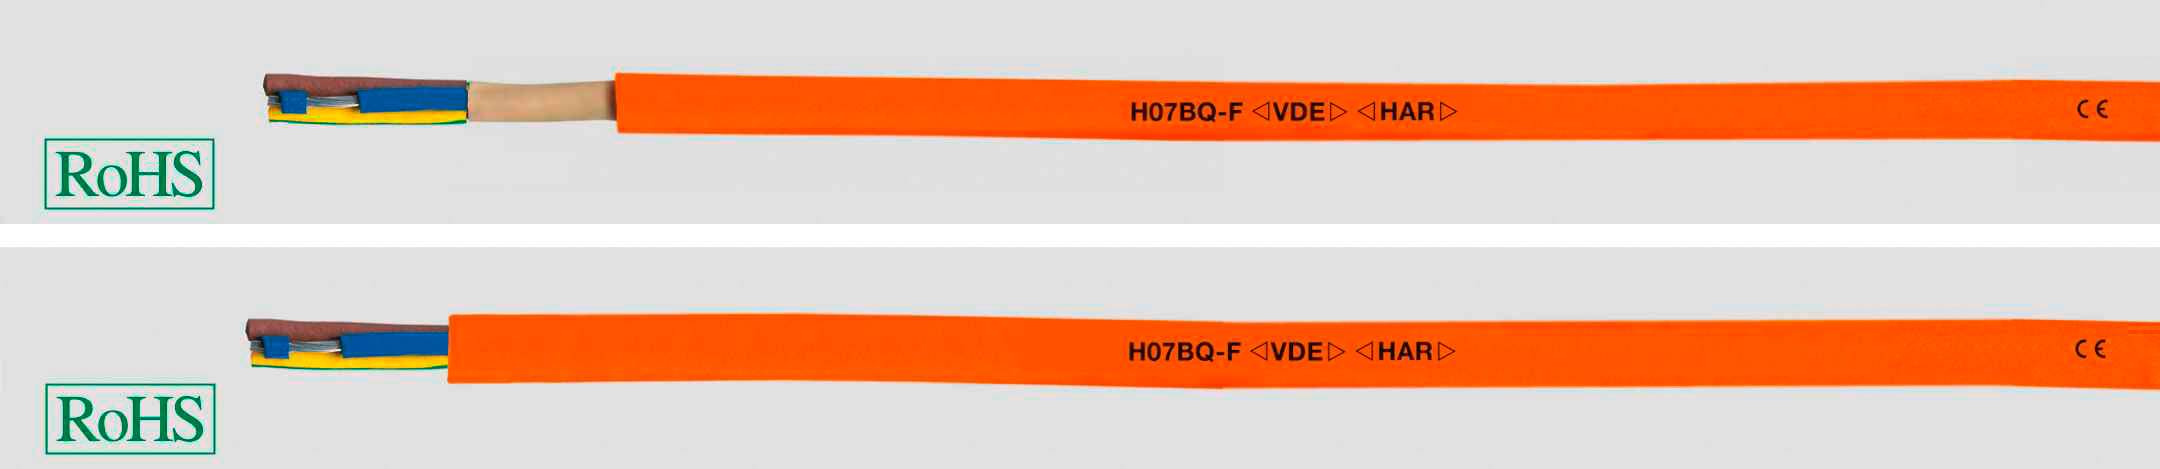 HELUKABEL 22060-1000 Gummischlauchleitung H07BQ-F 4 x 1.5 mm² Orange 1000 m